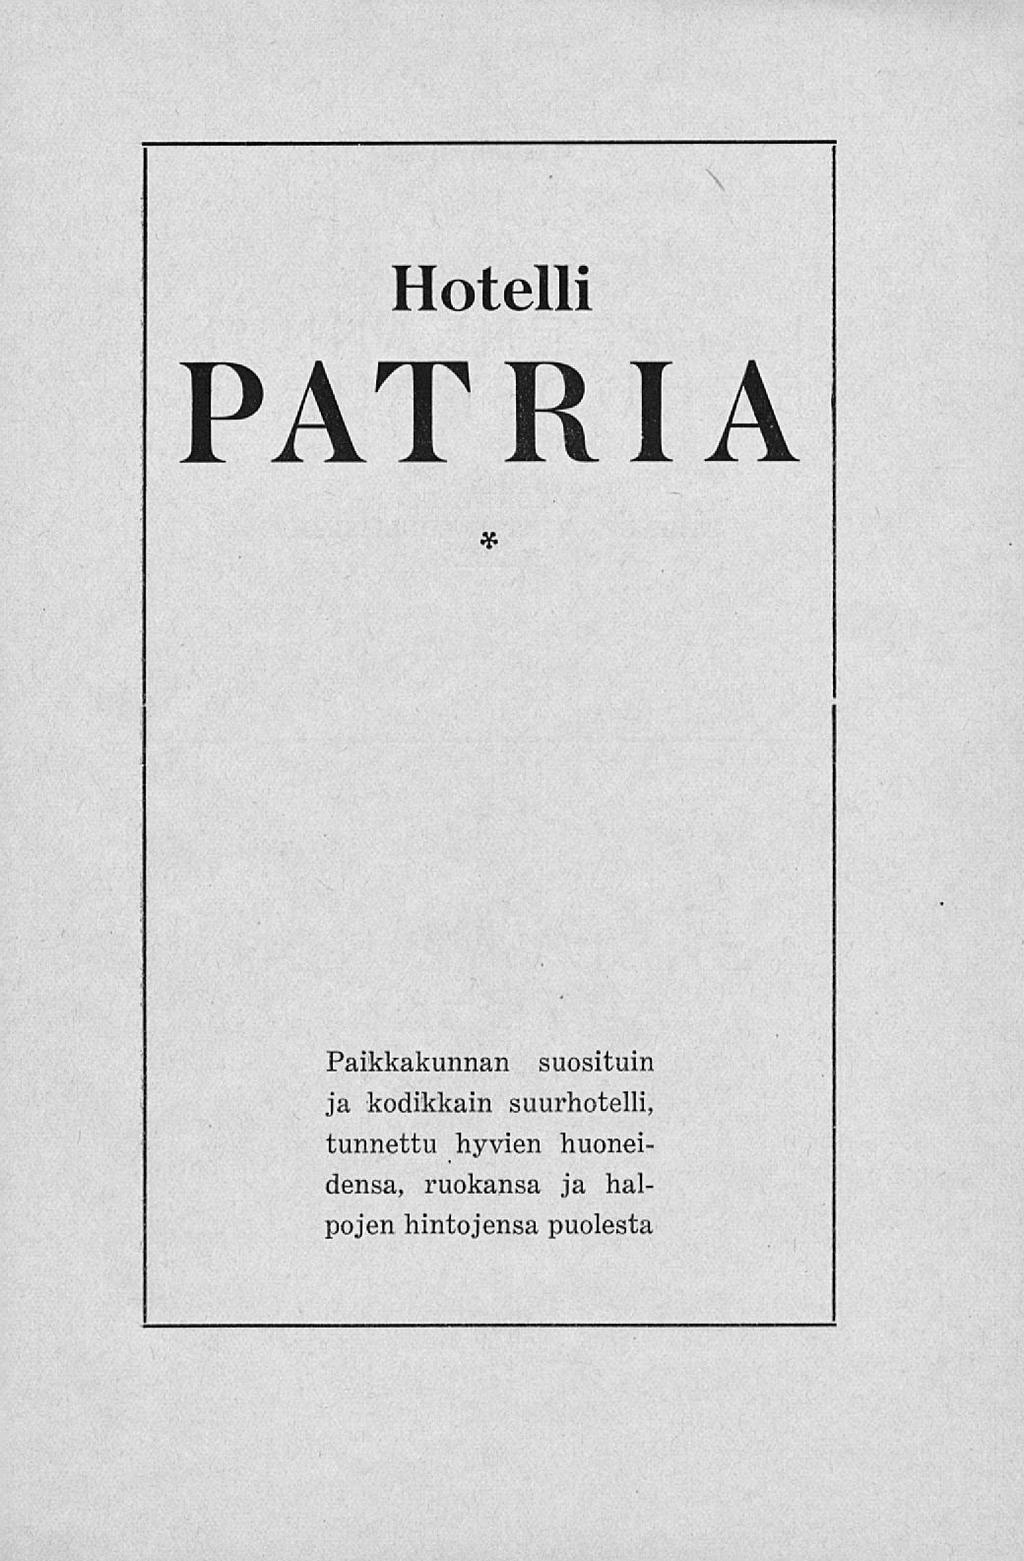 Hotelli PATRIA * Paikkakunnan suosituin ja kodikkain suurhotelli,